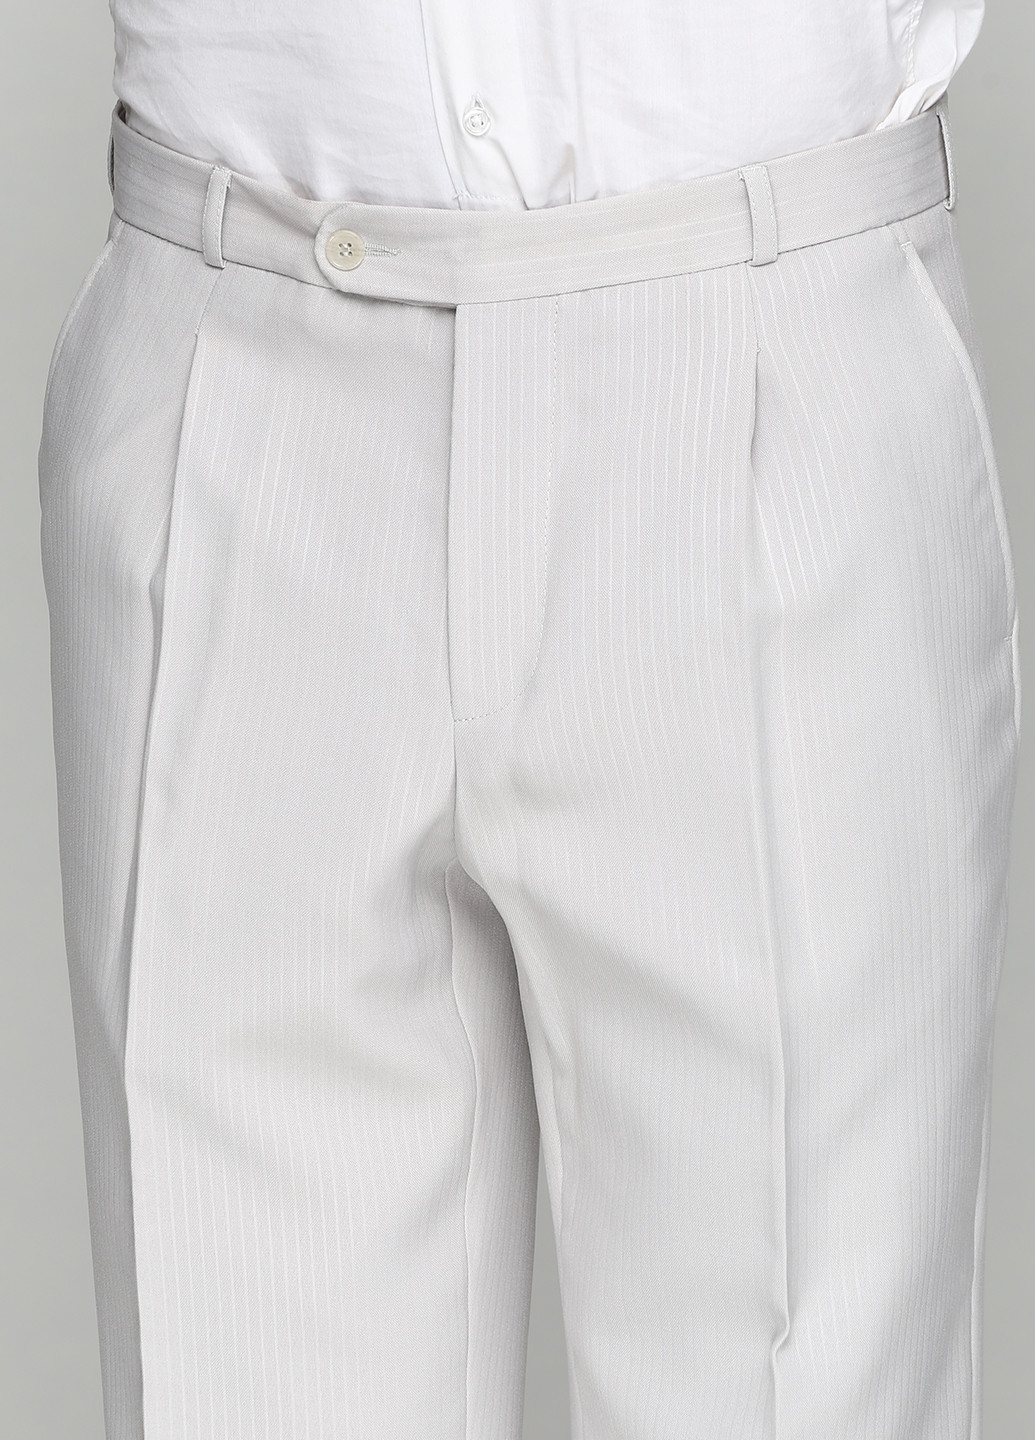 Світло-бежевий демісезонний костюм (пиджак, брюки) брючний Galant